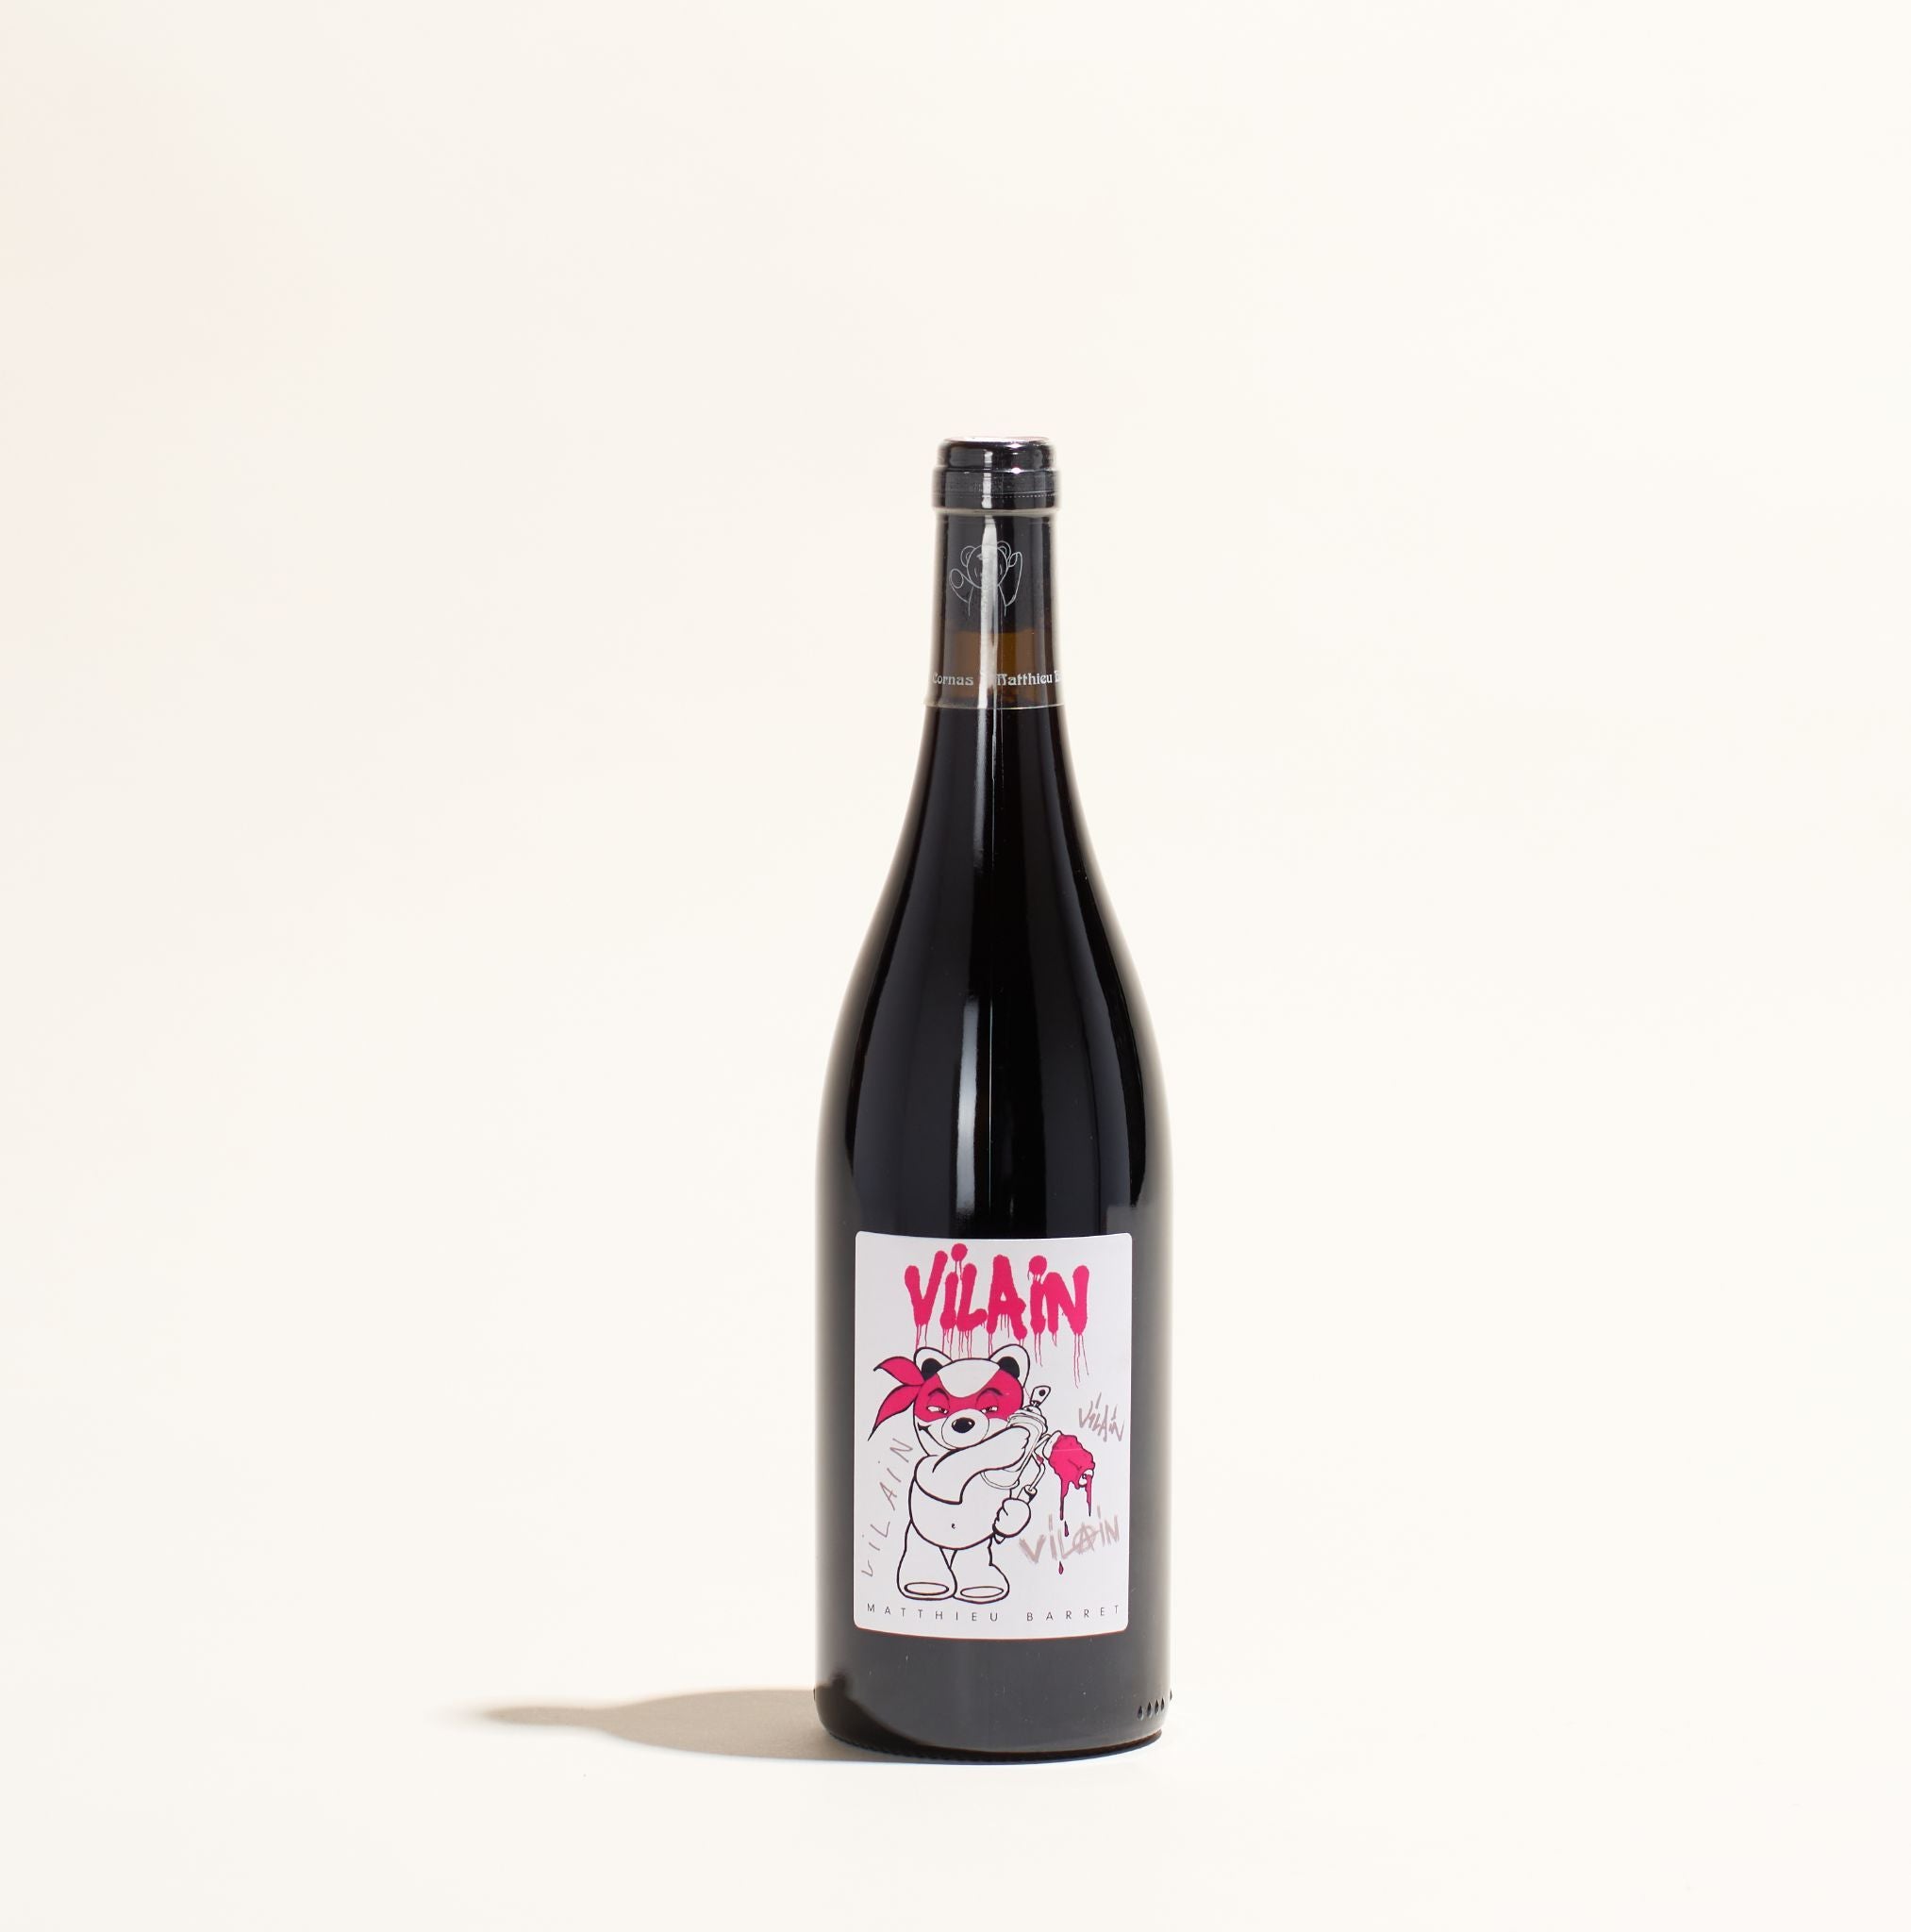 vilain mattheiu barret natural red wine rhone france front label